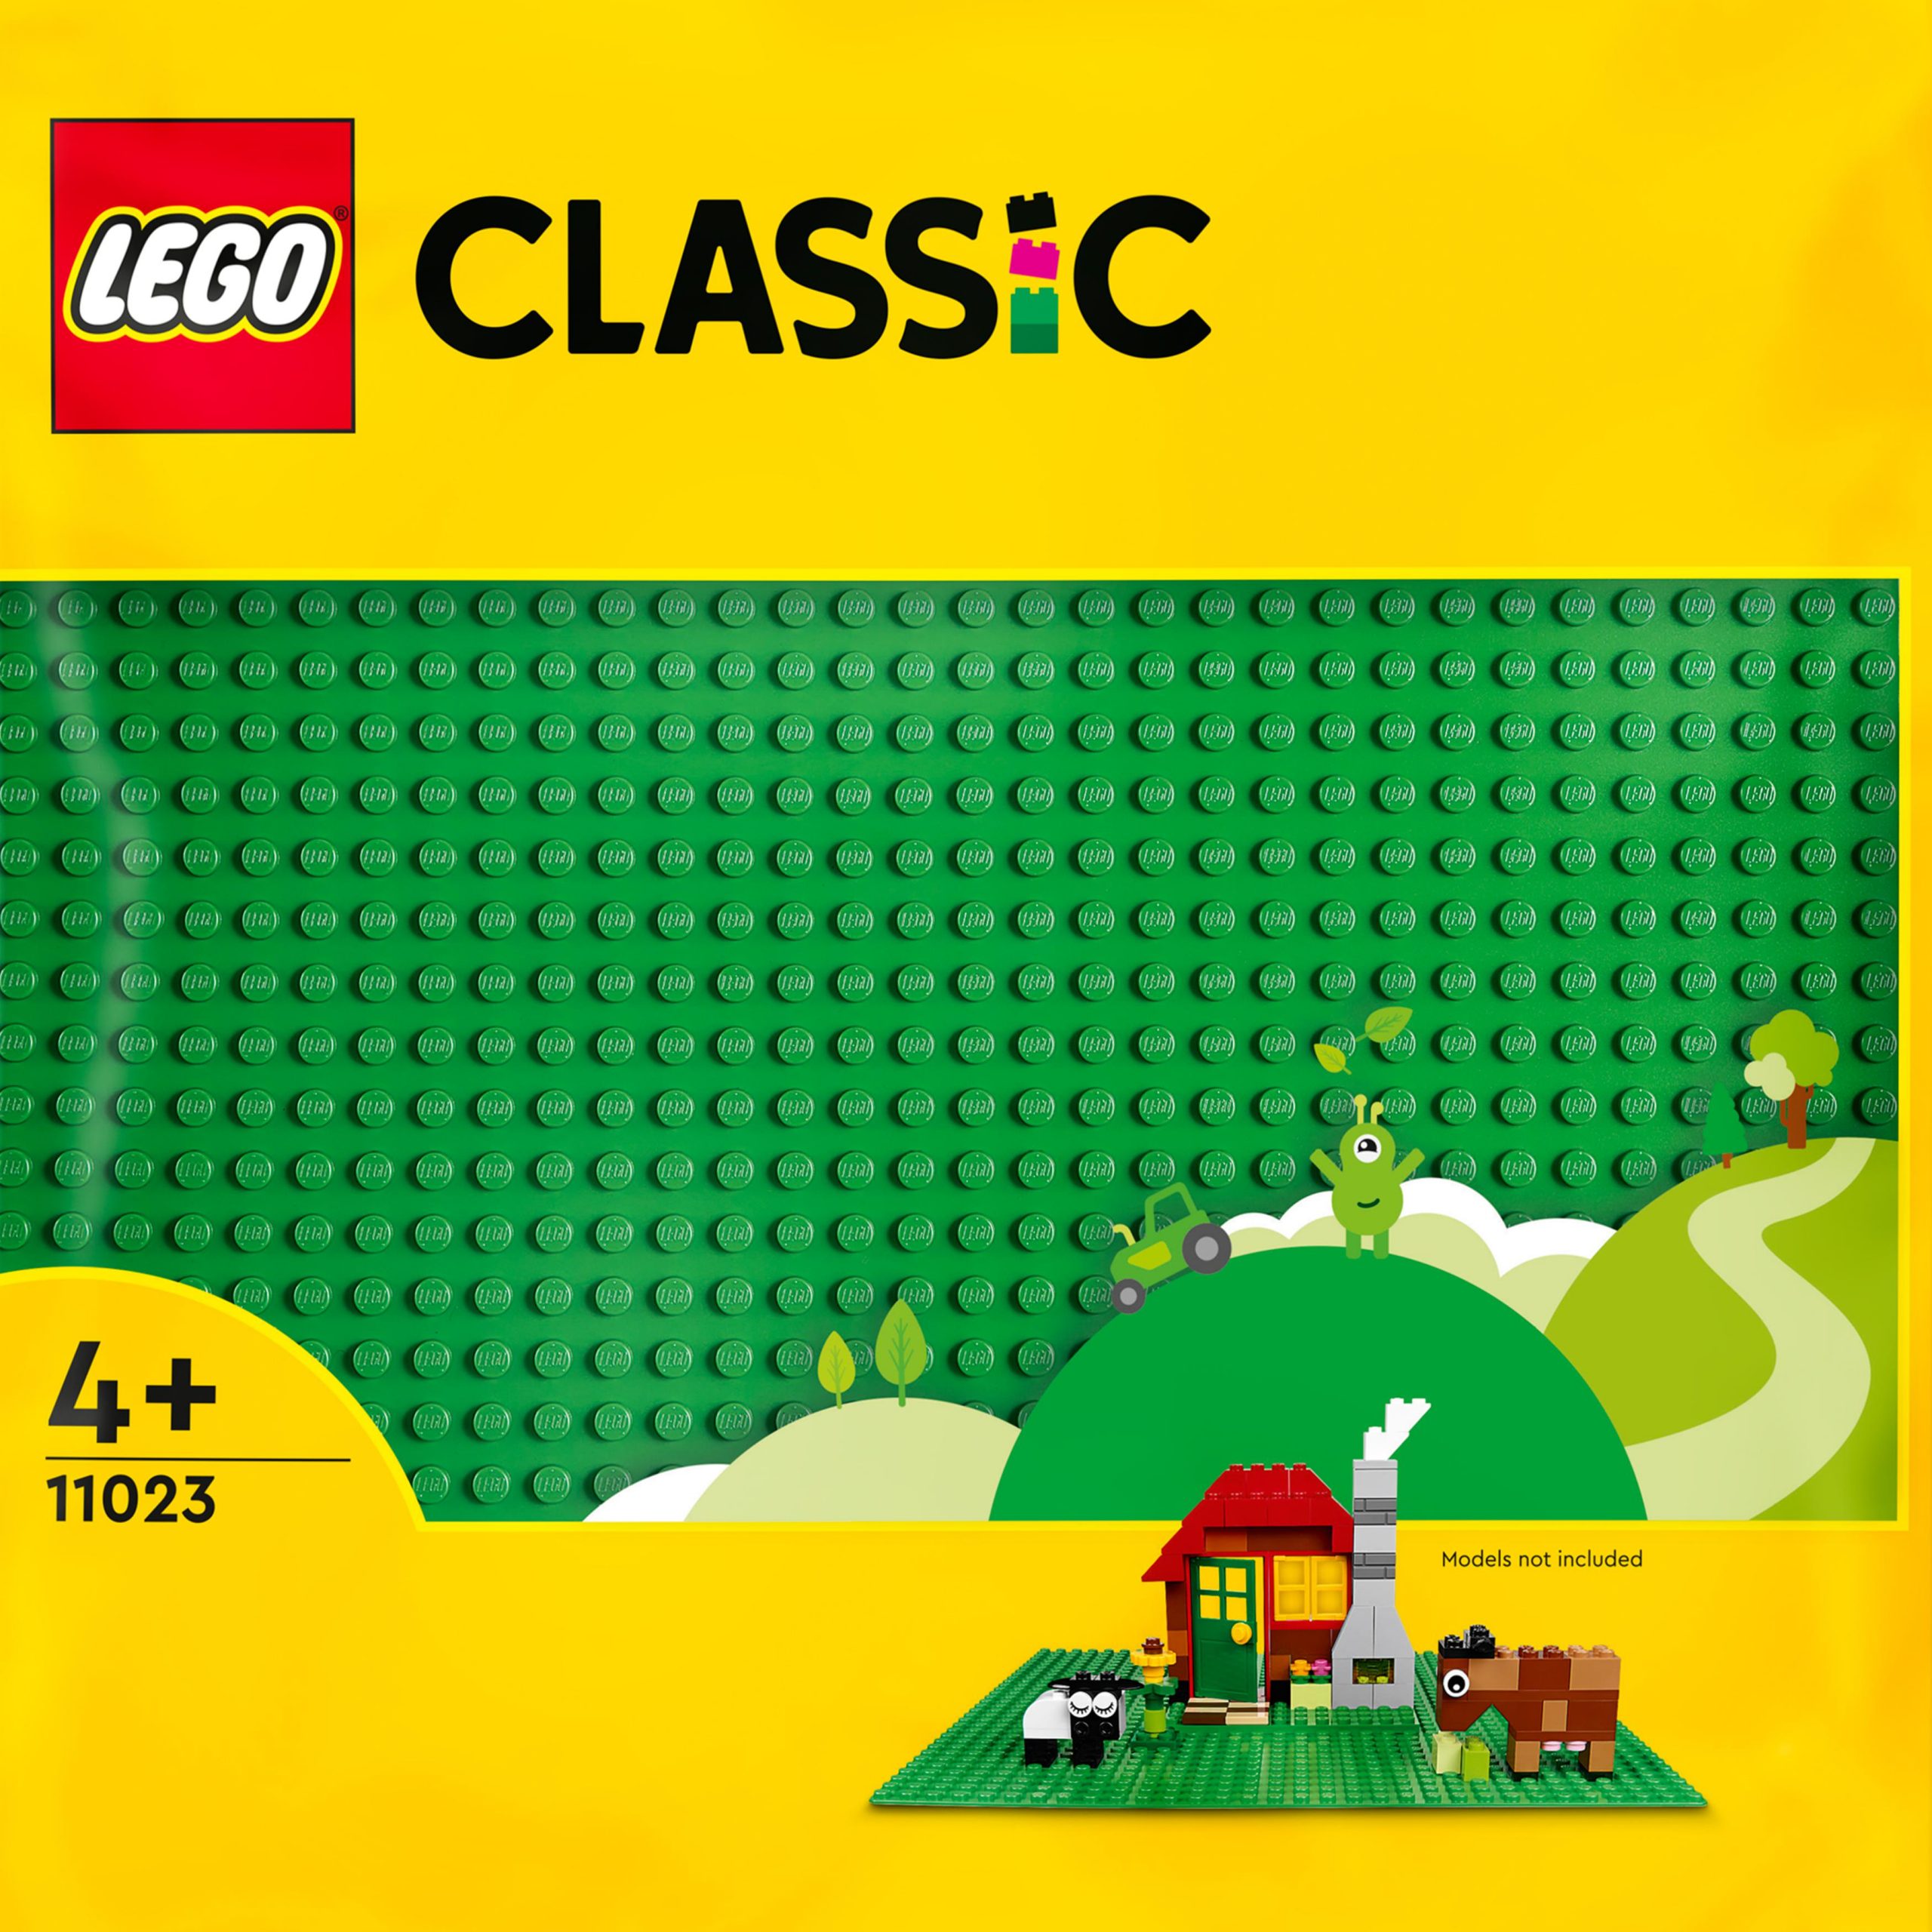 Lego classic 11023 base verde, tavola per costruzioni quadrata con 32x32 bottoncini, piattaforma classica per mattoncini - LEGO CLASSIC, Lego